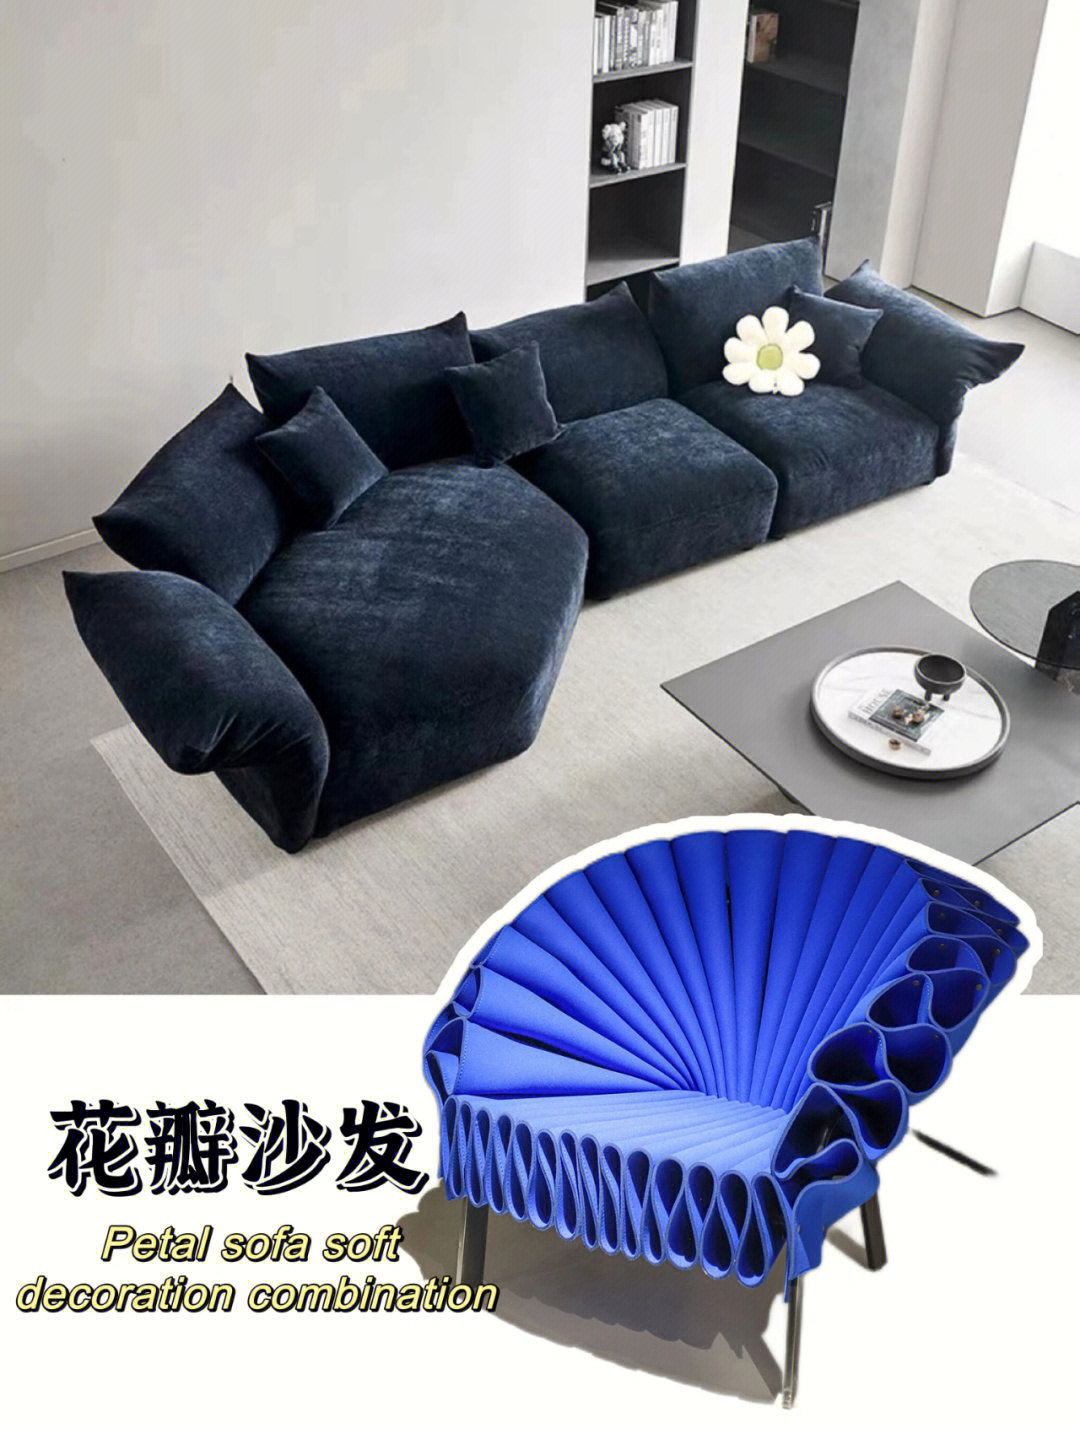 它是一款兼具艺术性和功能性的座椅蓝色为新家注入了鲜活的生命力让